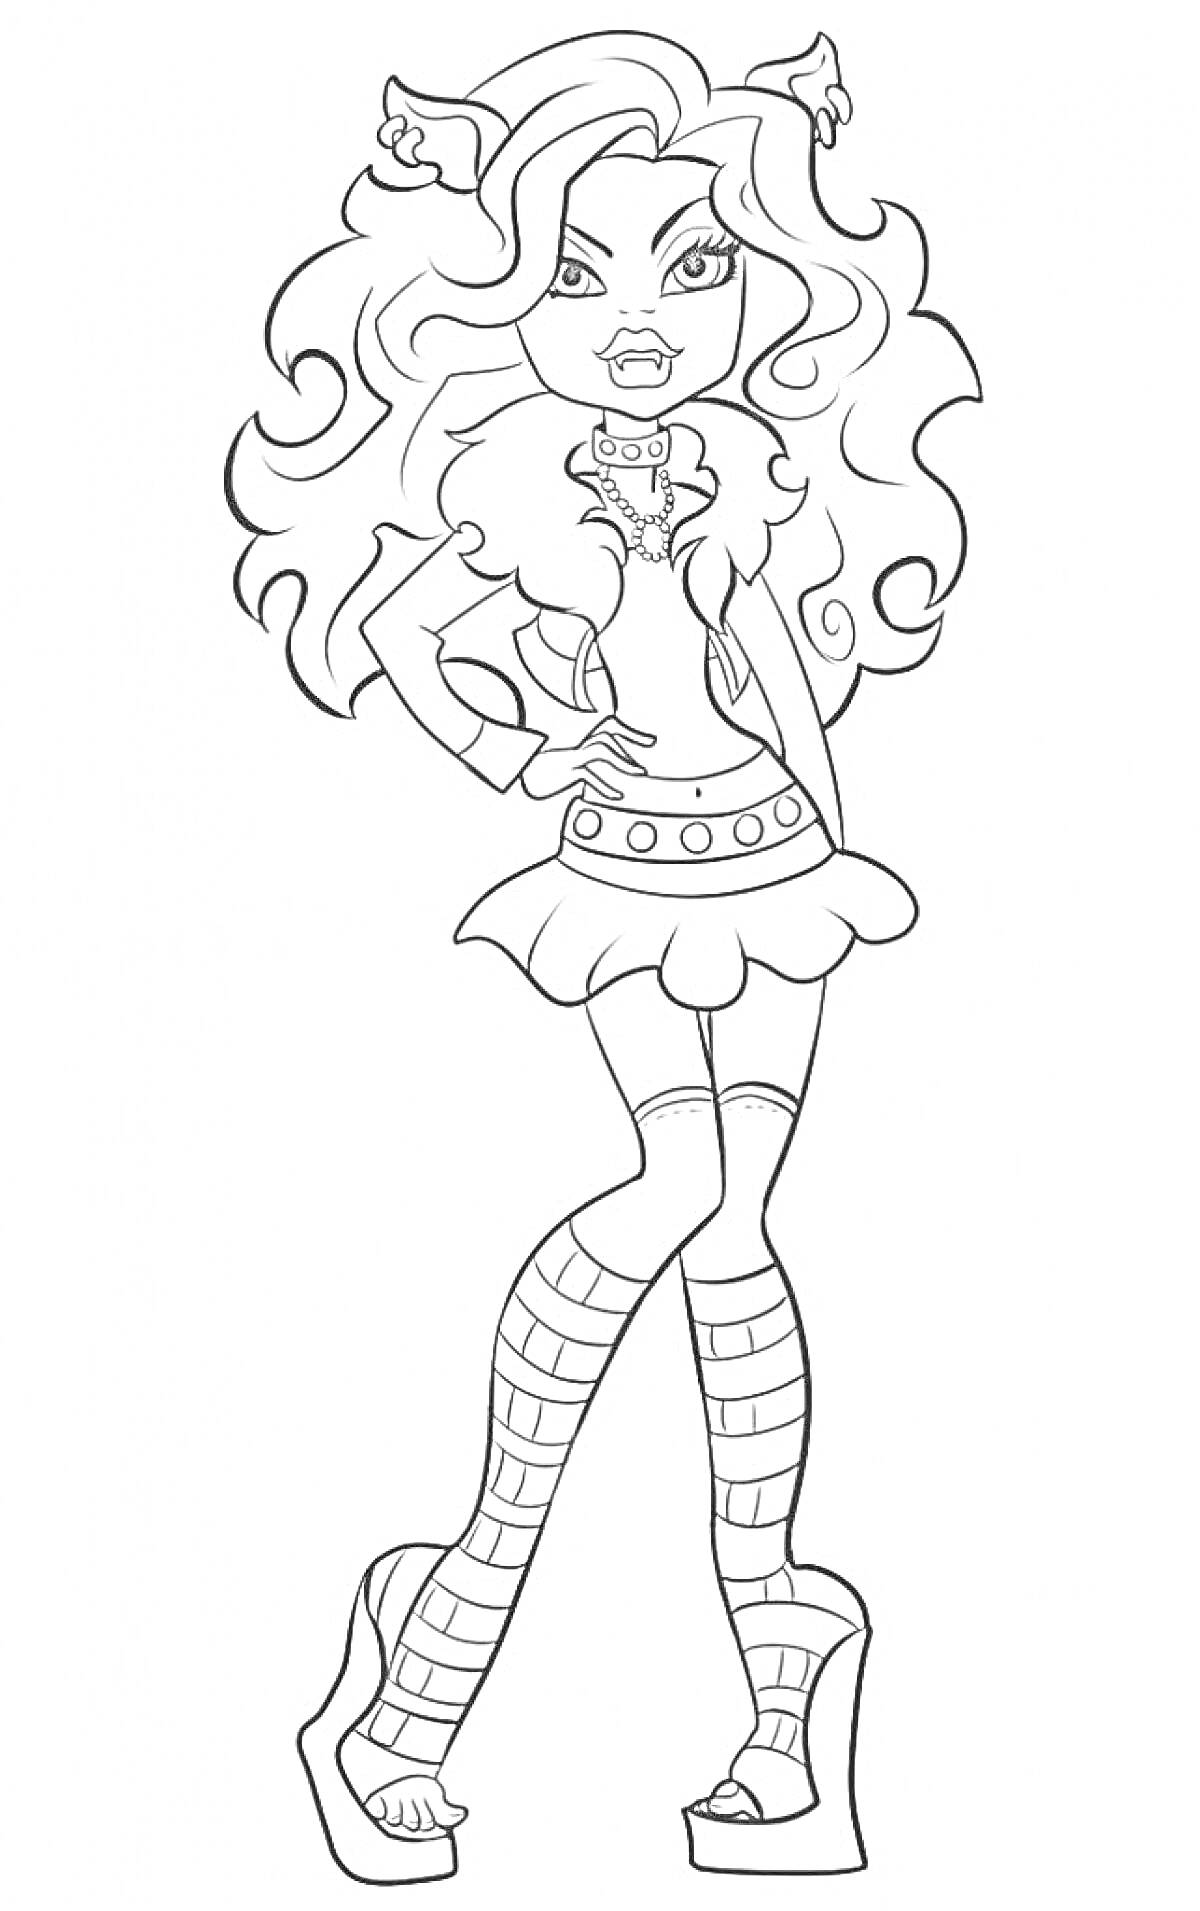  Девушка-монстр с длинными волосами, ушками, в короткой юбке и обуви на платформе